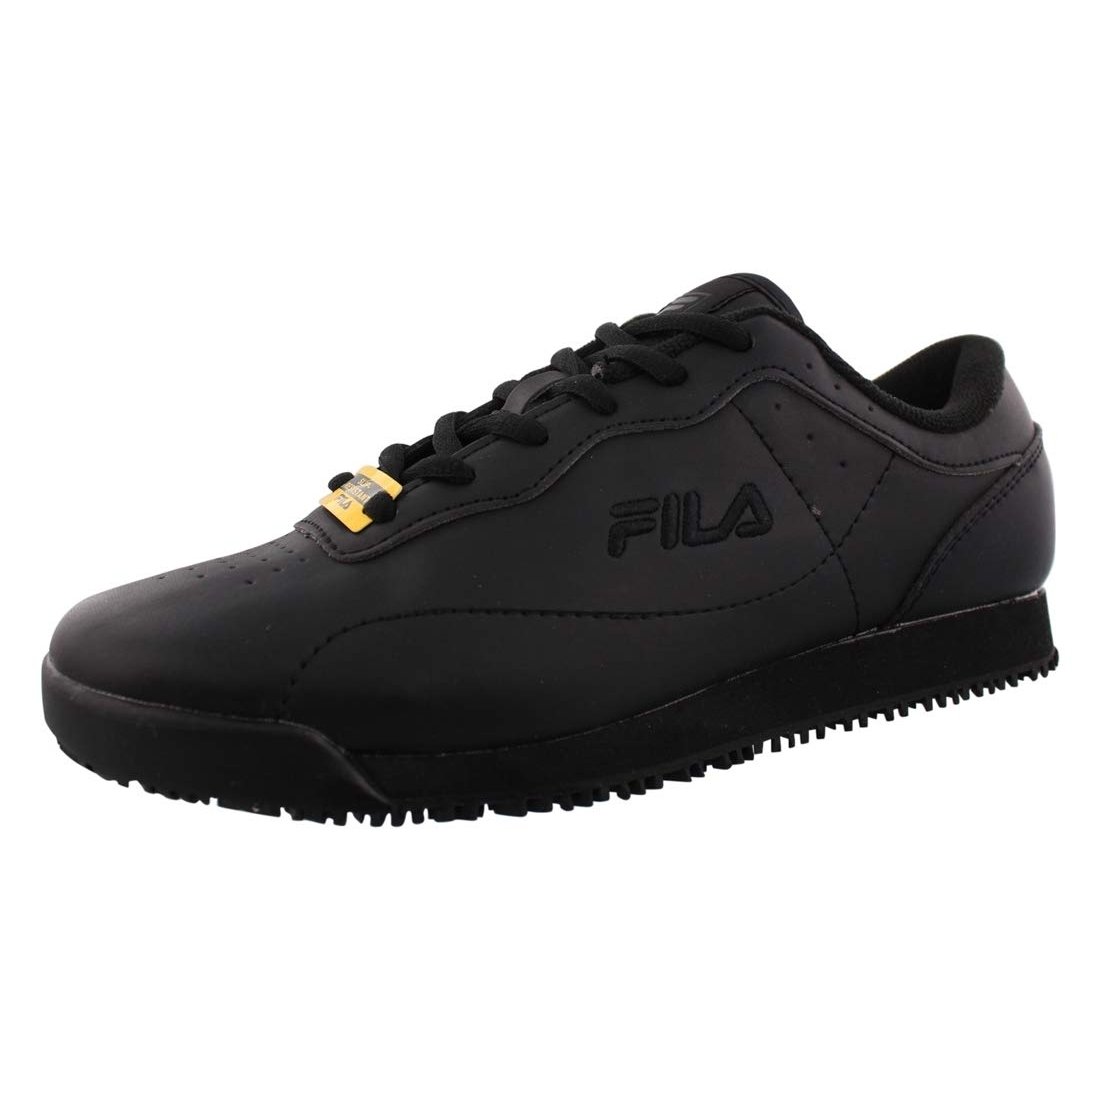 Fila Memory Viable Sr Wide Womens Shoes Size 10, Color: Black 0 BLK/BLK/BLK - Black, 6.5